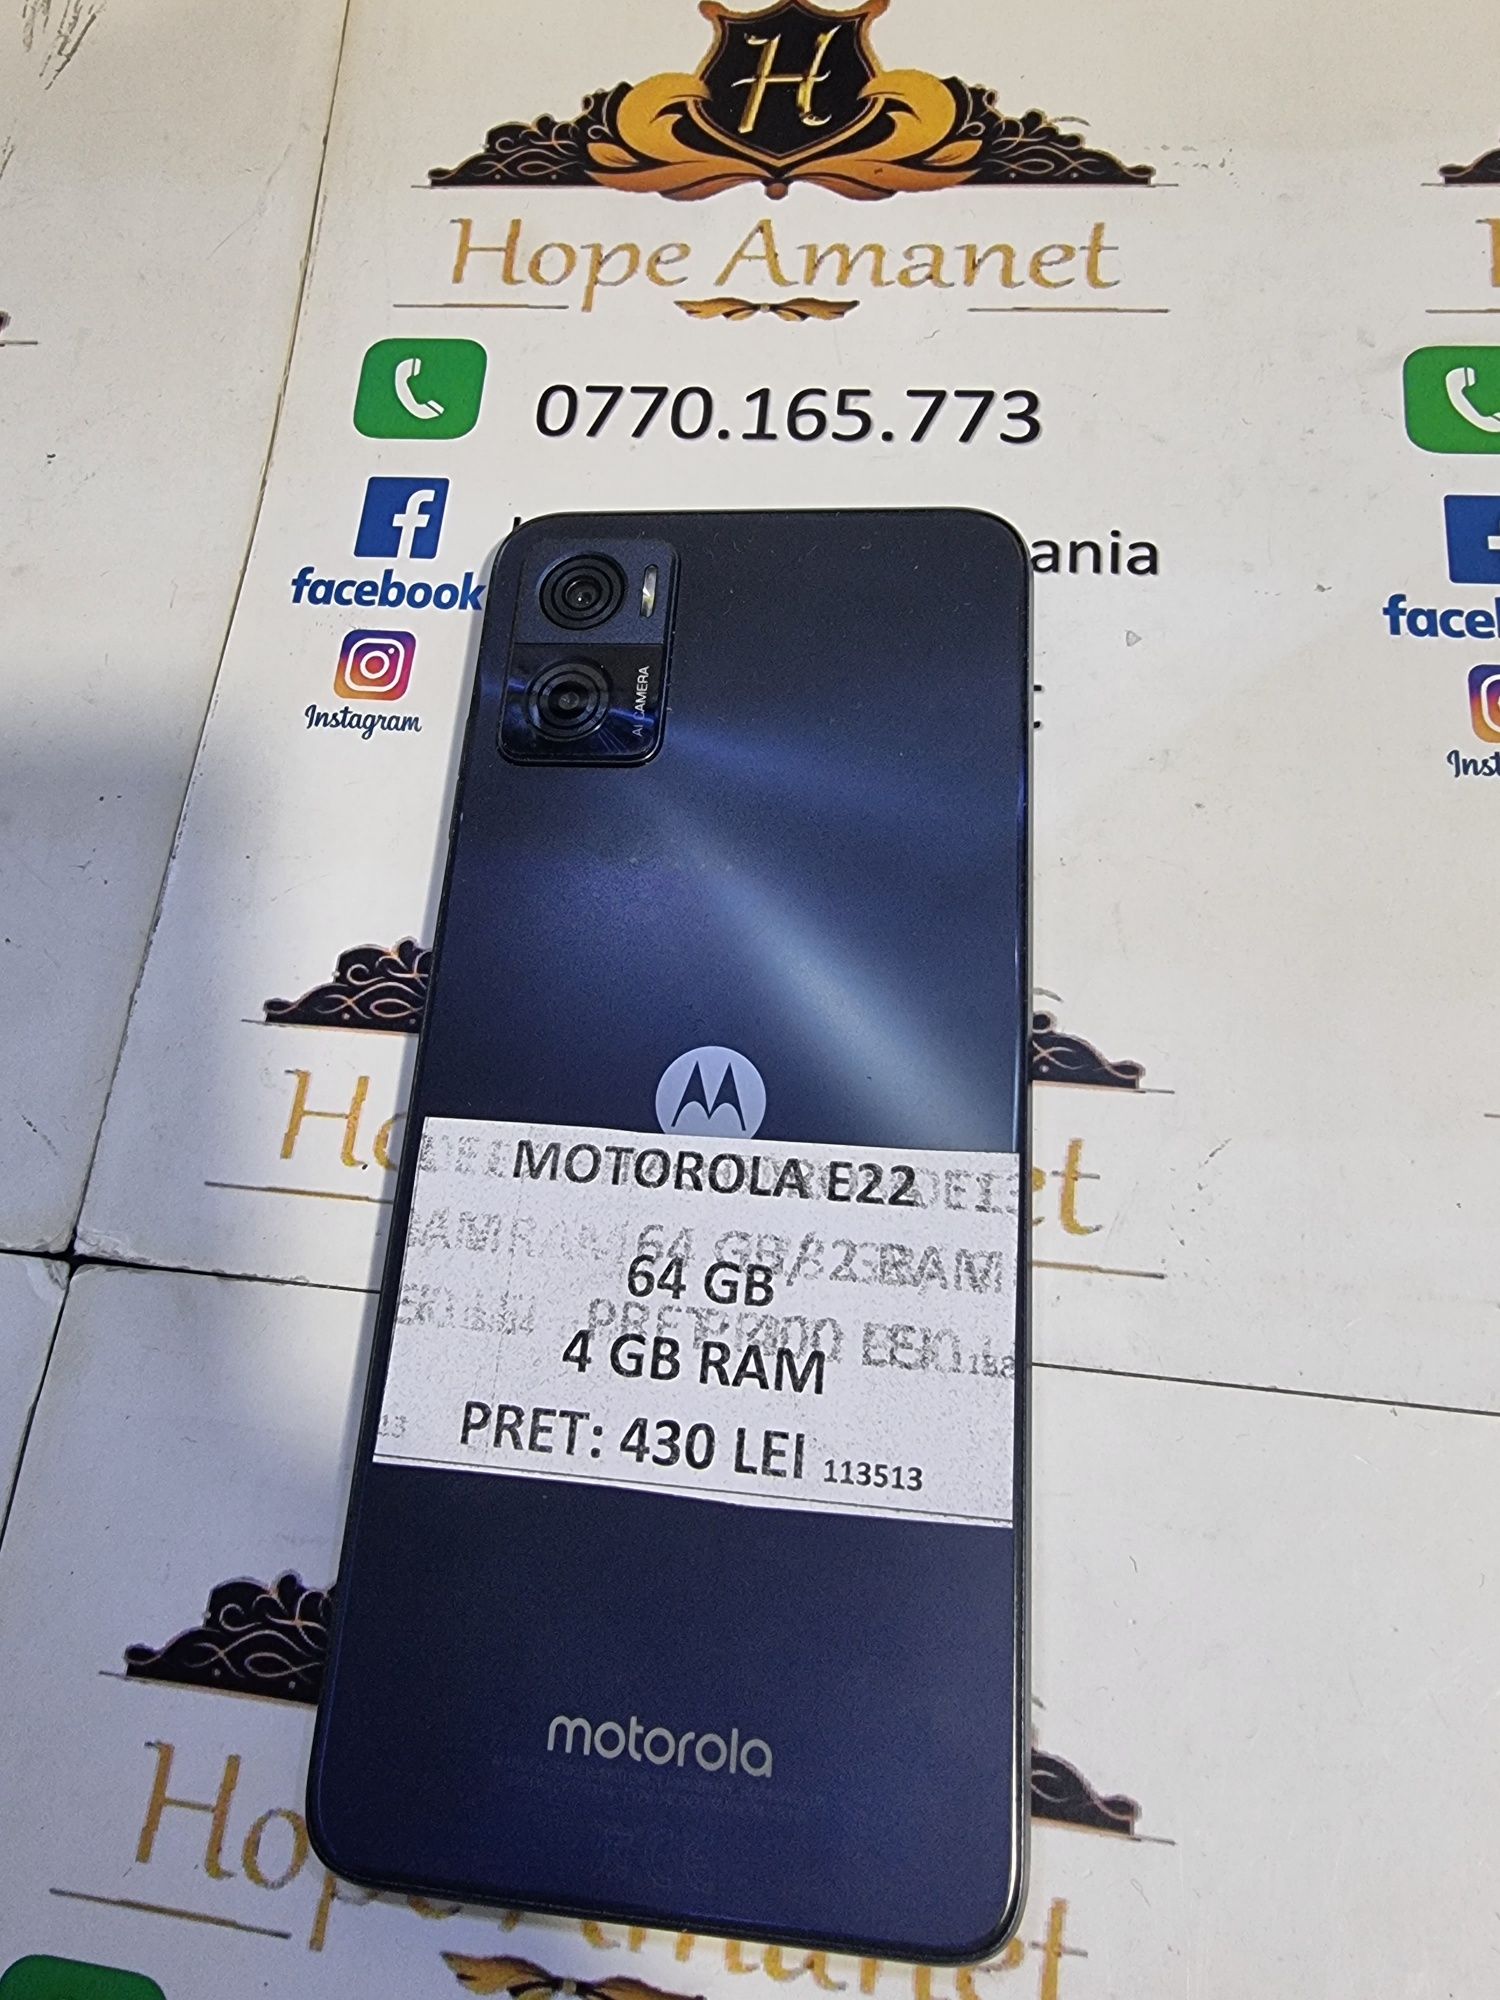 Hope Amanet P6 Motorola E22